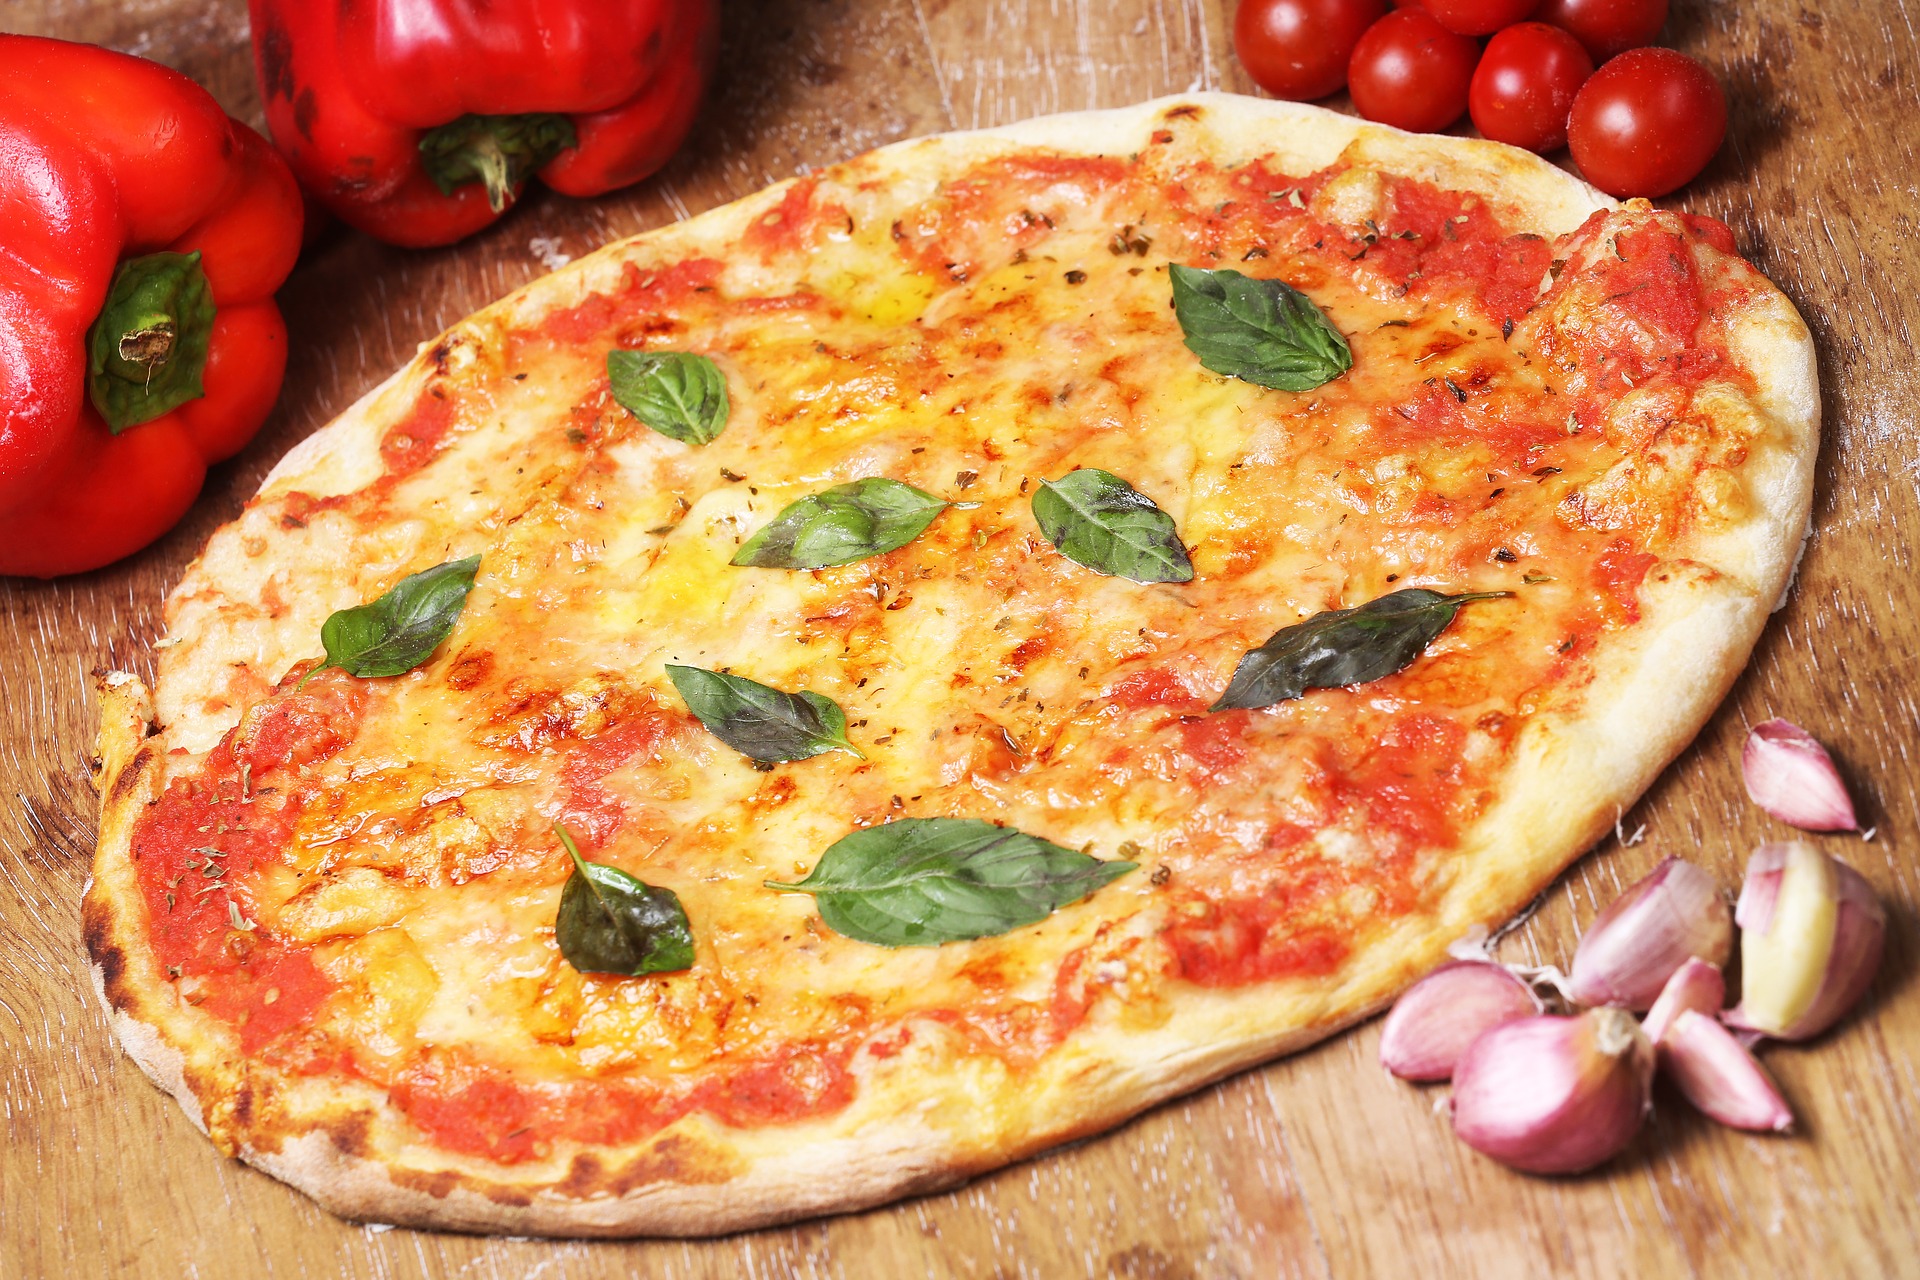 pizza okragla serwowana w pizerniach lub na telefon, tzw. "a piatto" czyli "na talerz"...